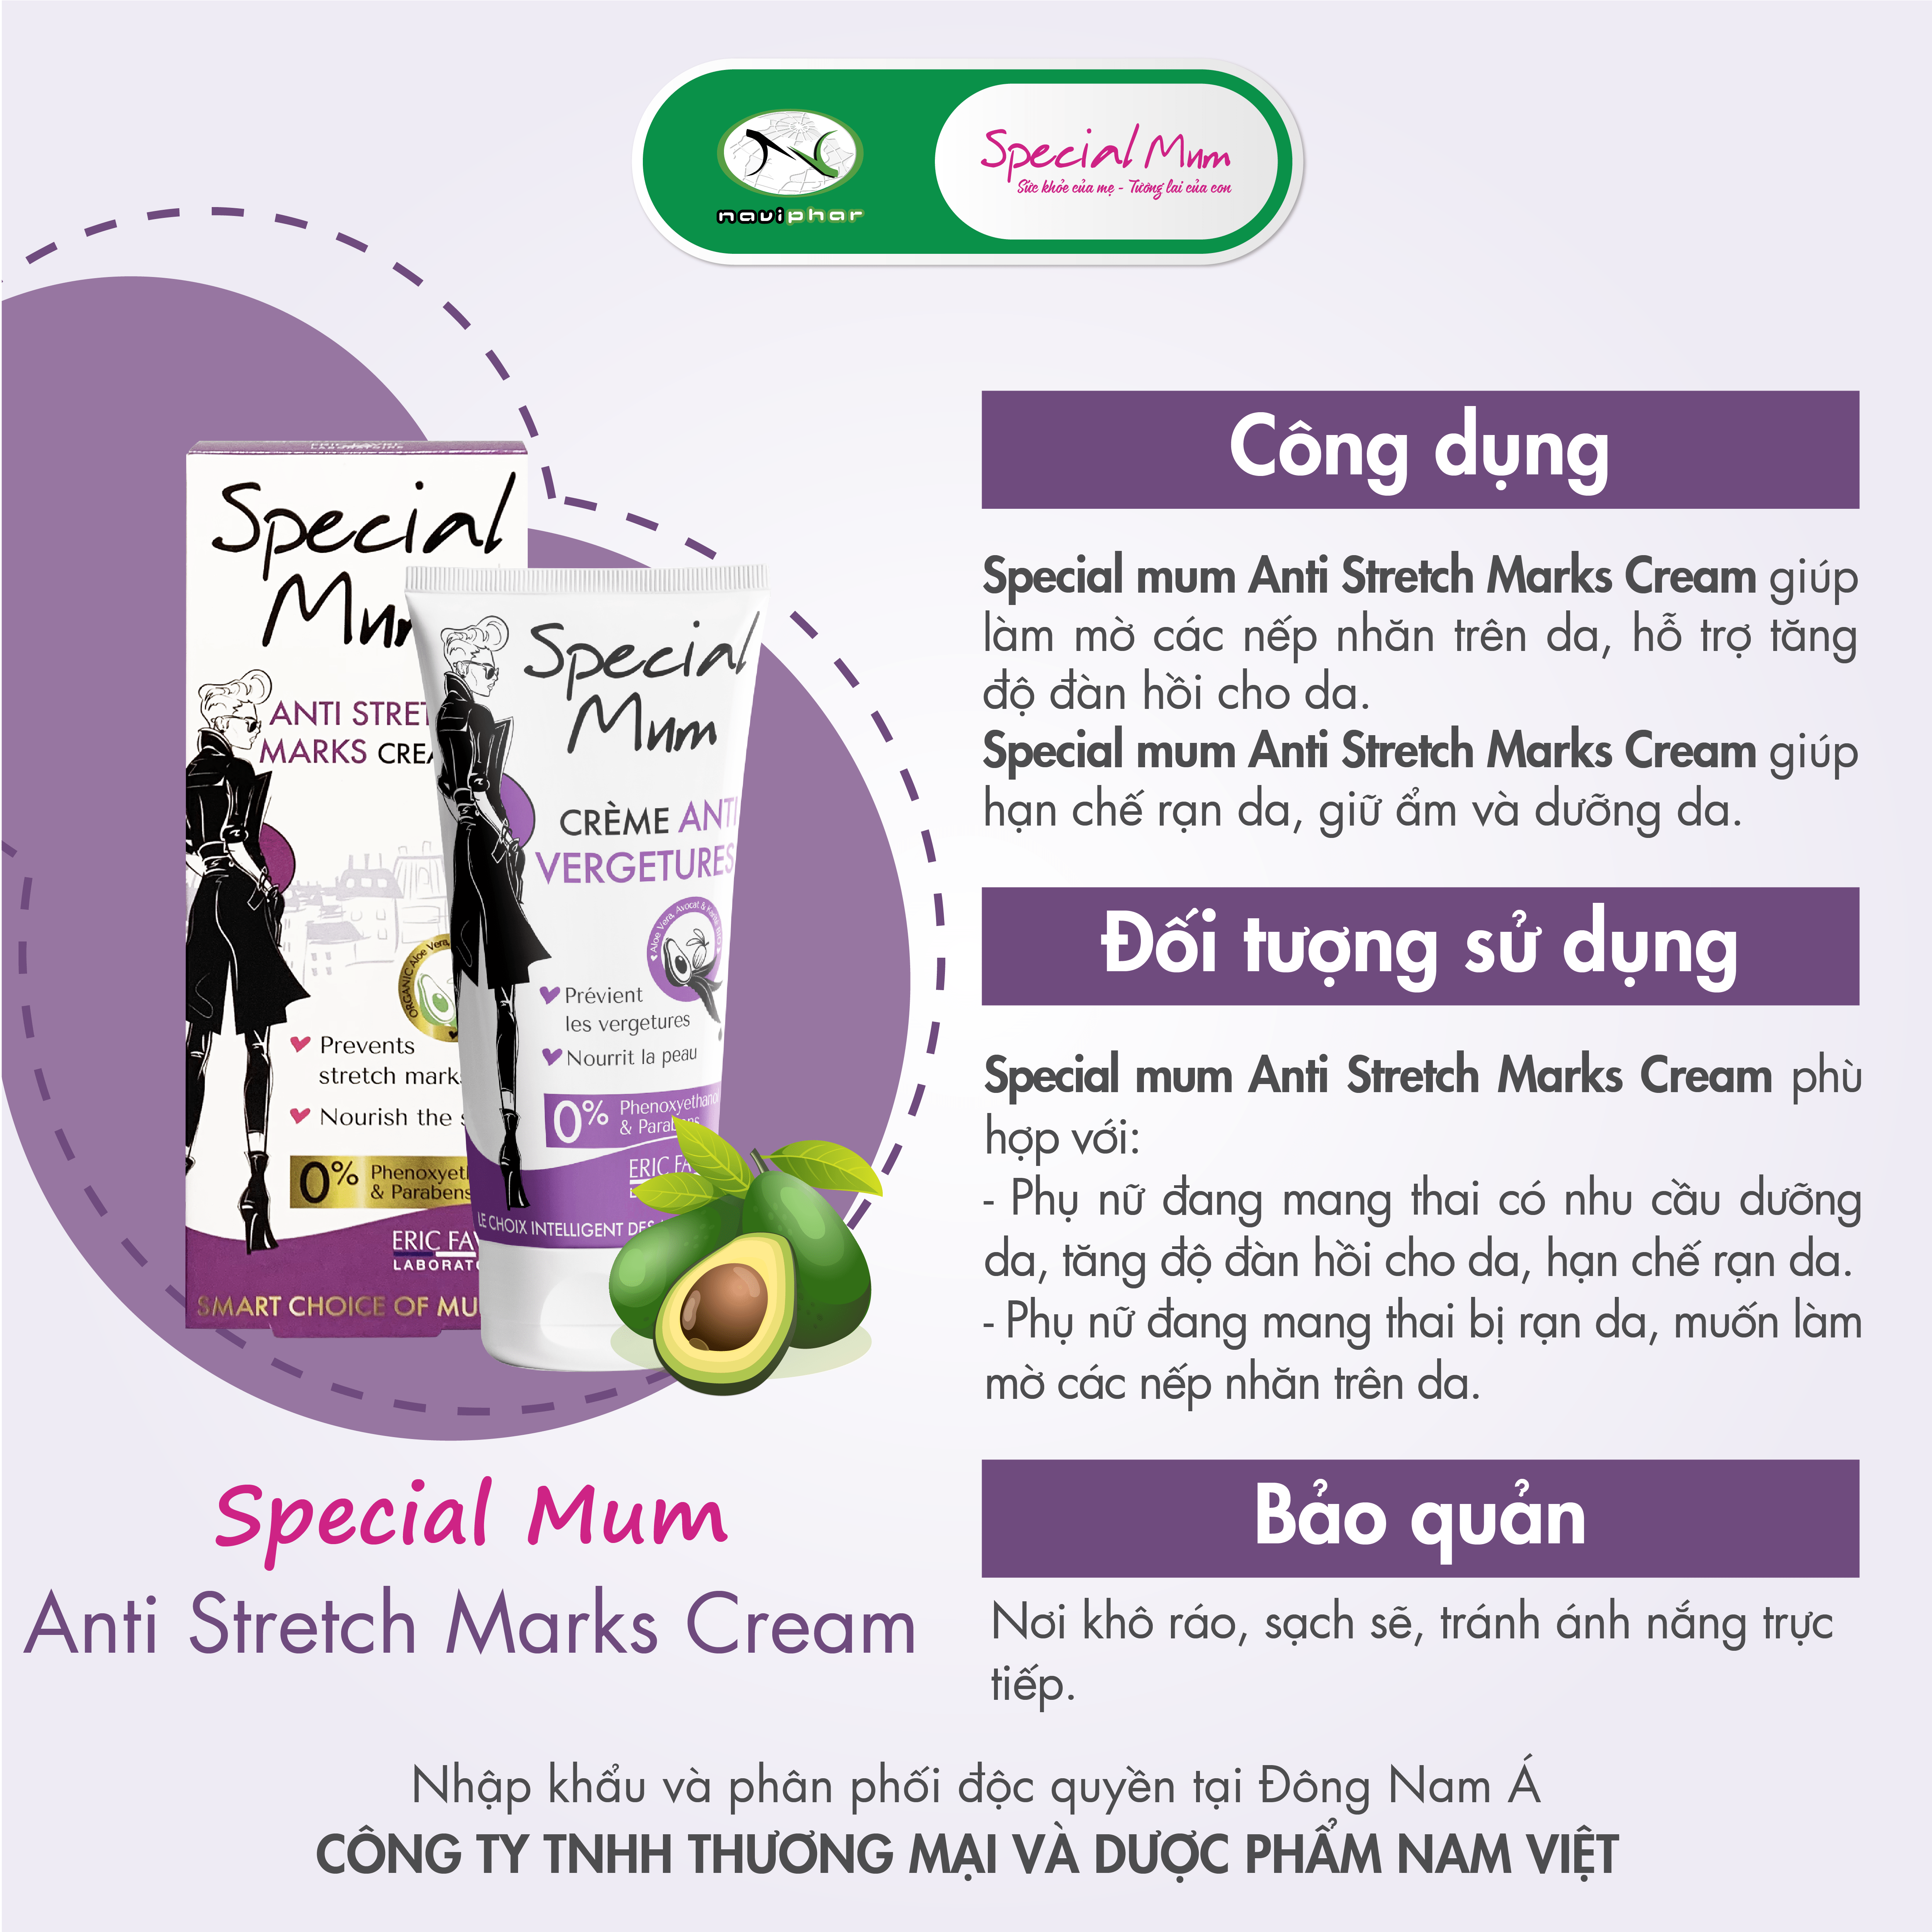 Special Mum Anti Stretch Marks Cream - Hỗ trợ làm mờ các nếp nhăn trên da, rạn da, dưỡng ẩm da [Nhập khẩu Pháp]